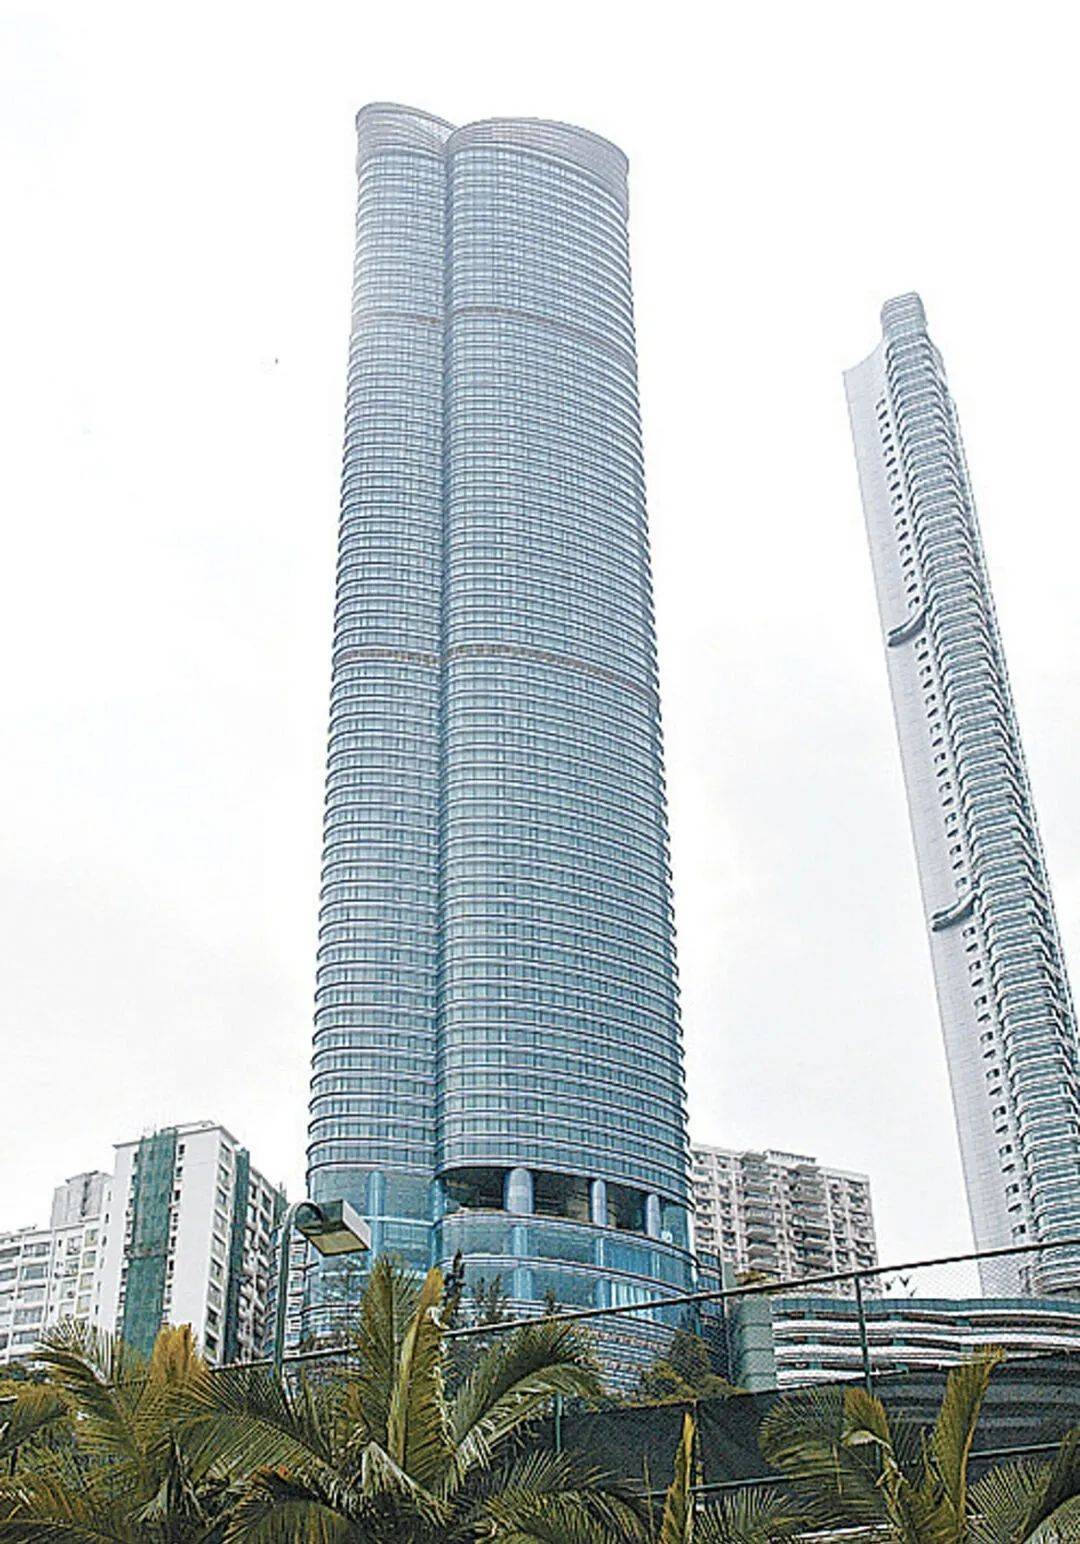 王菲出售香港豪宅,持货12年赚近千万,持多个物业身家至少20亿